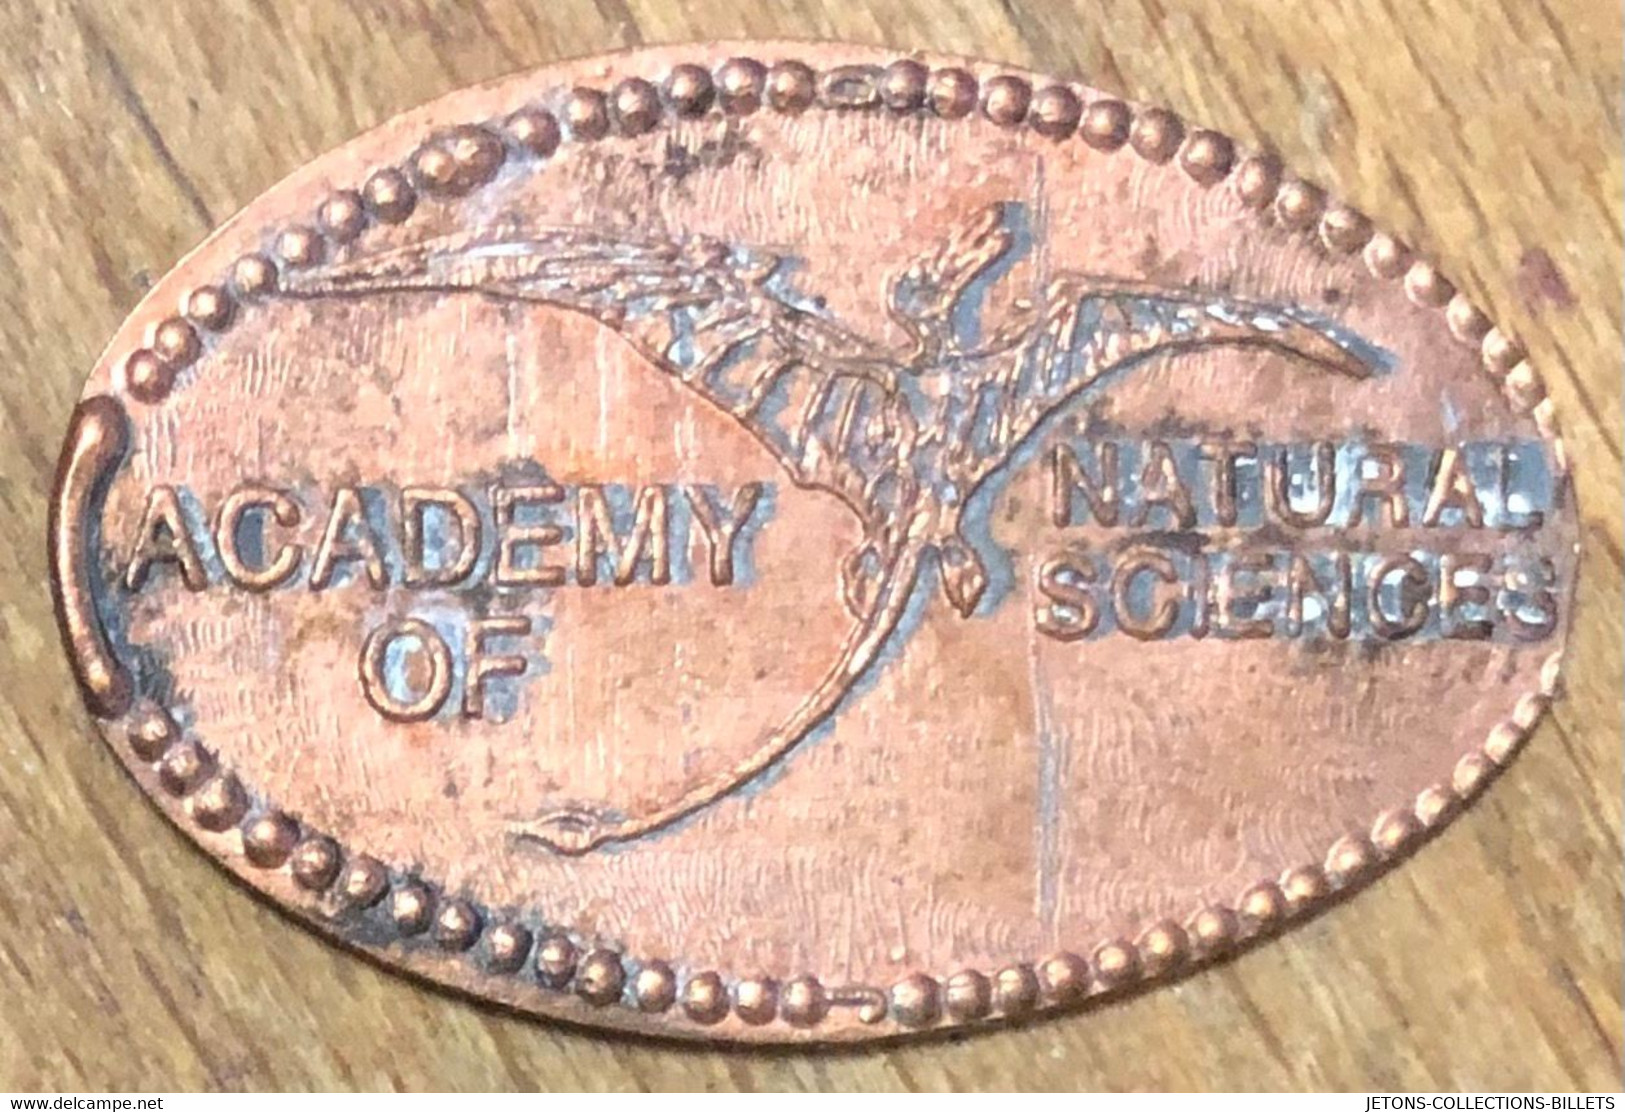 ÉTATS-UNIS USA ACADEMY OF NATURAL SCIENCES PIÈCE ÉCRASÉE PENNY ELONGATED COIN MEDAILLE TOURISTIQUE MEDALS TOKENS - Souvenirmunten (elongated Coins)